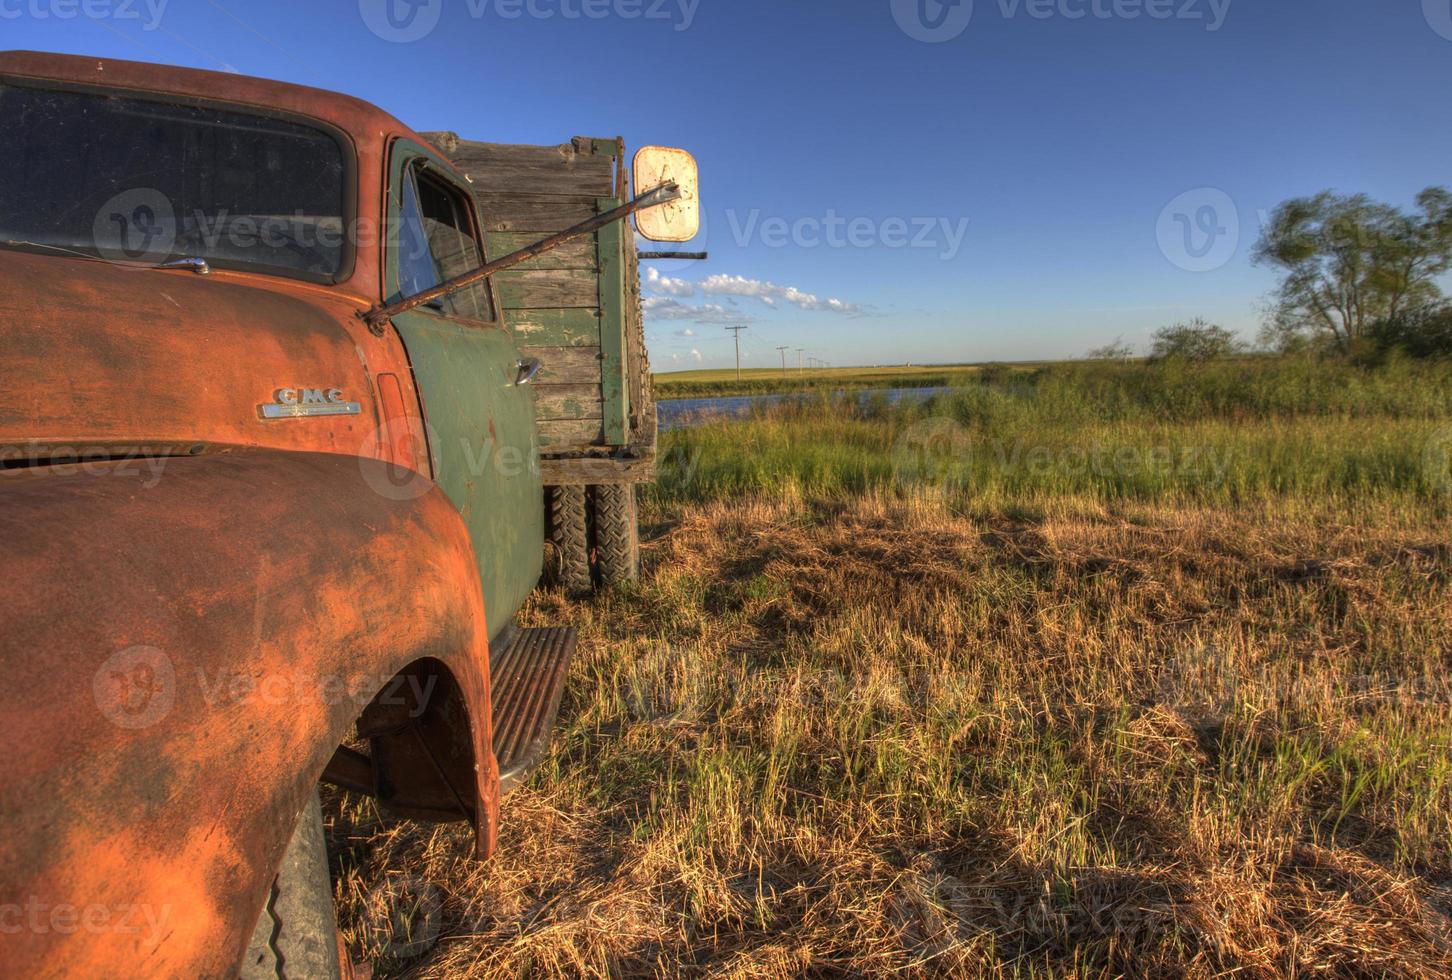 camiones de granja antiguos foto